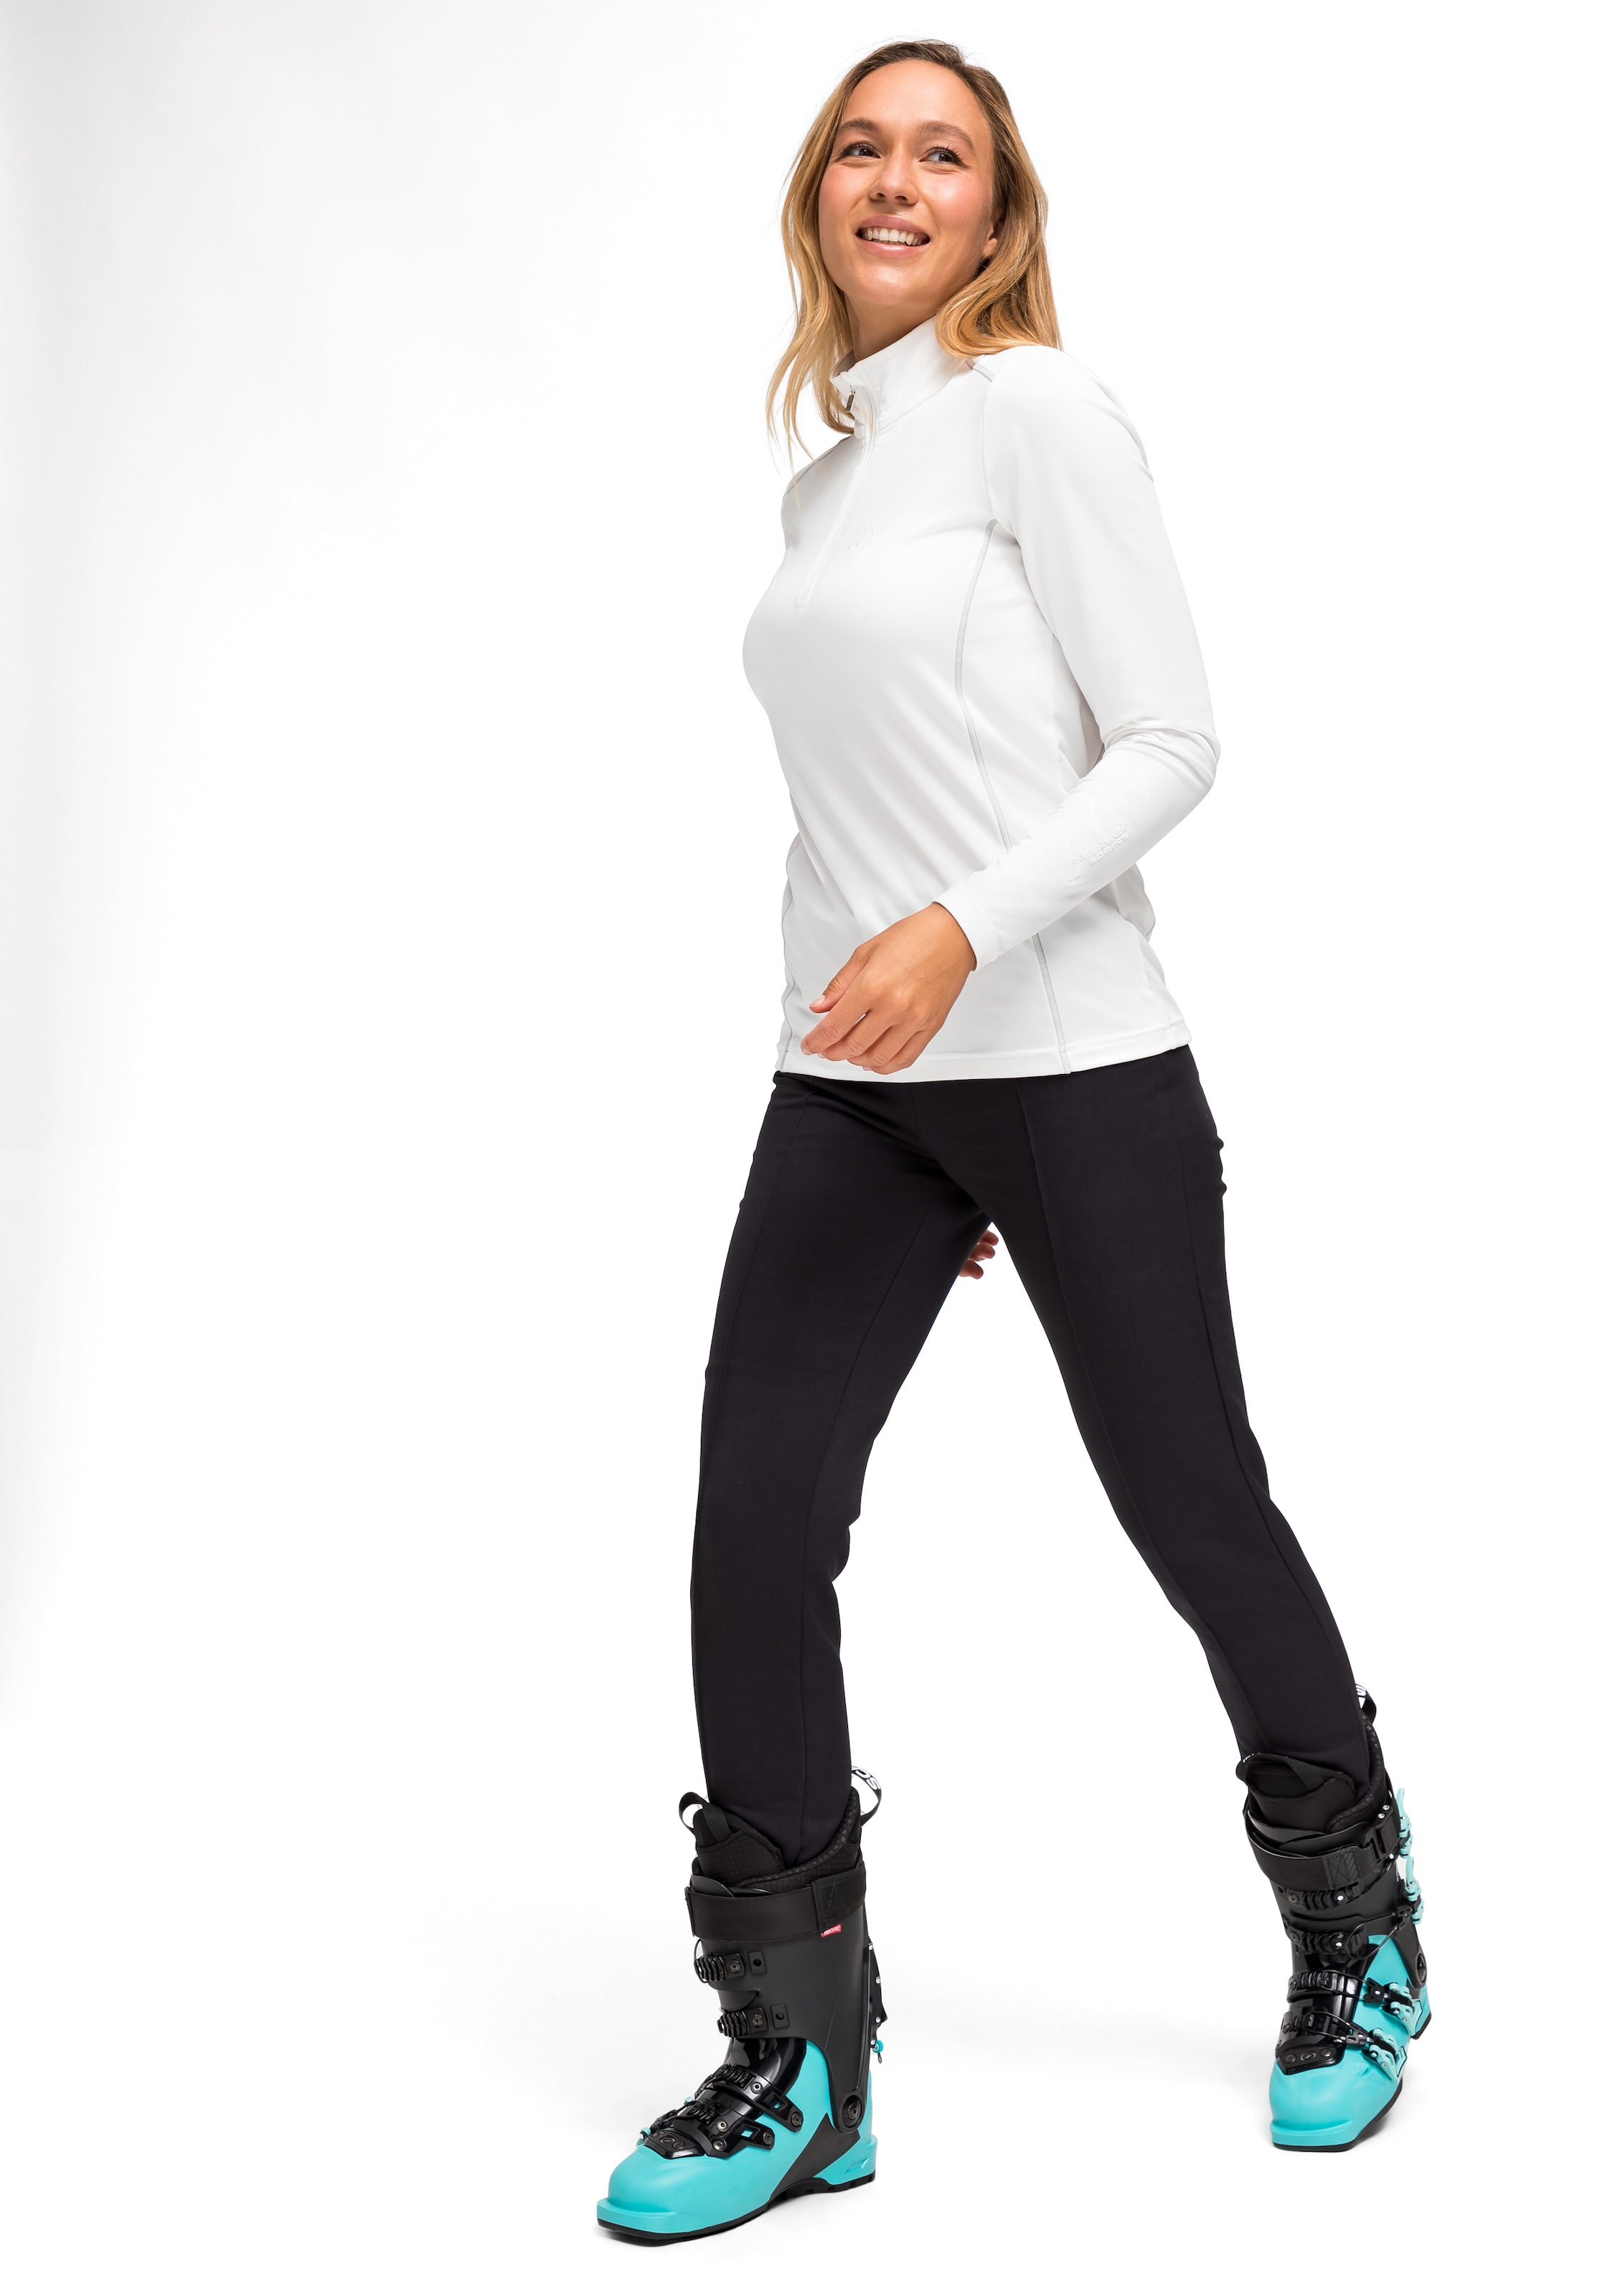 Sportliche Damen-Schlupfhose in weiß /Slim Fit